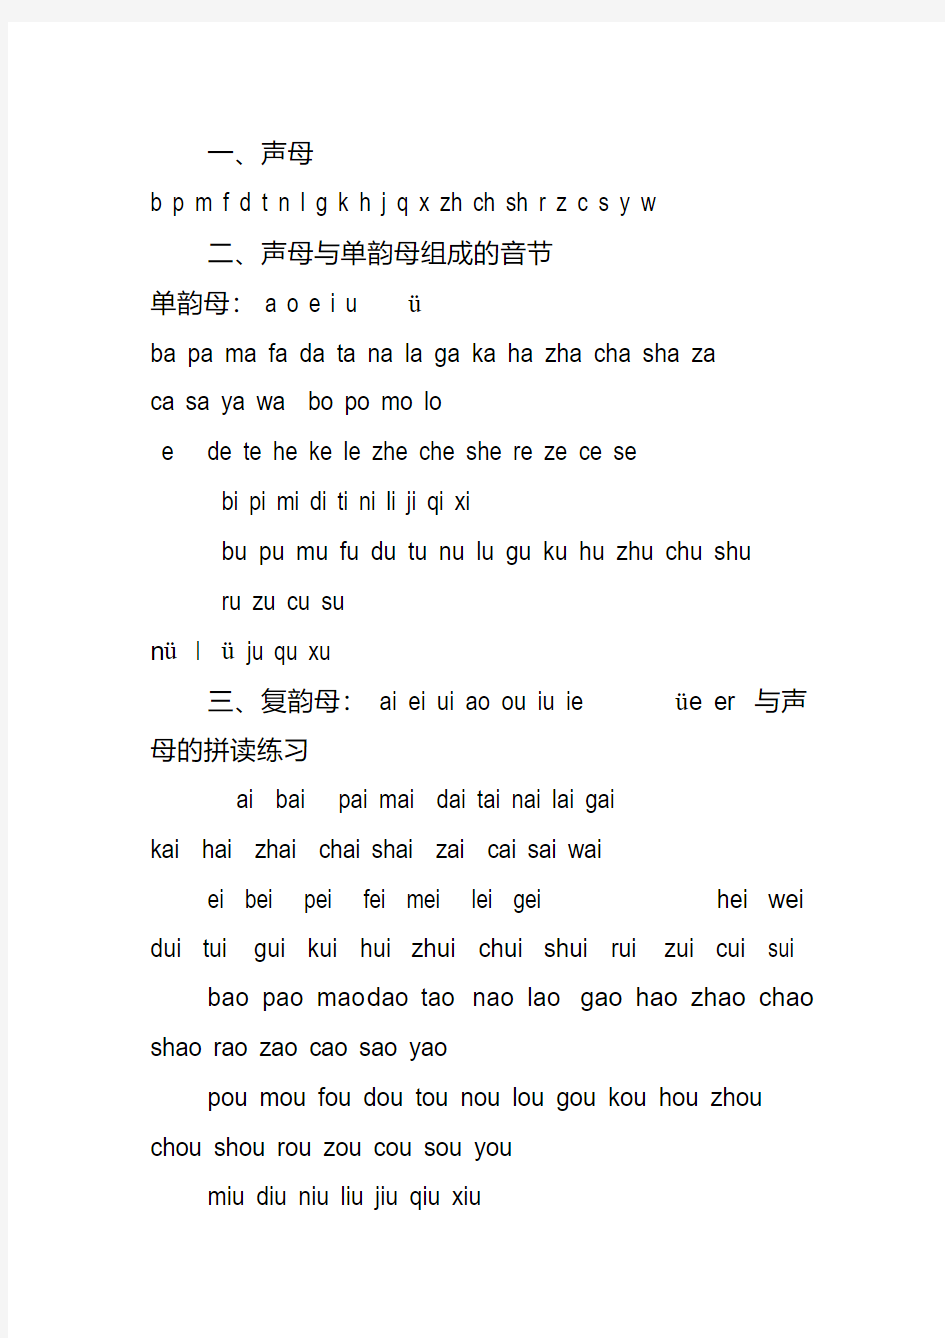 汉语拼音——声母韵母组成的音节(全部)